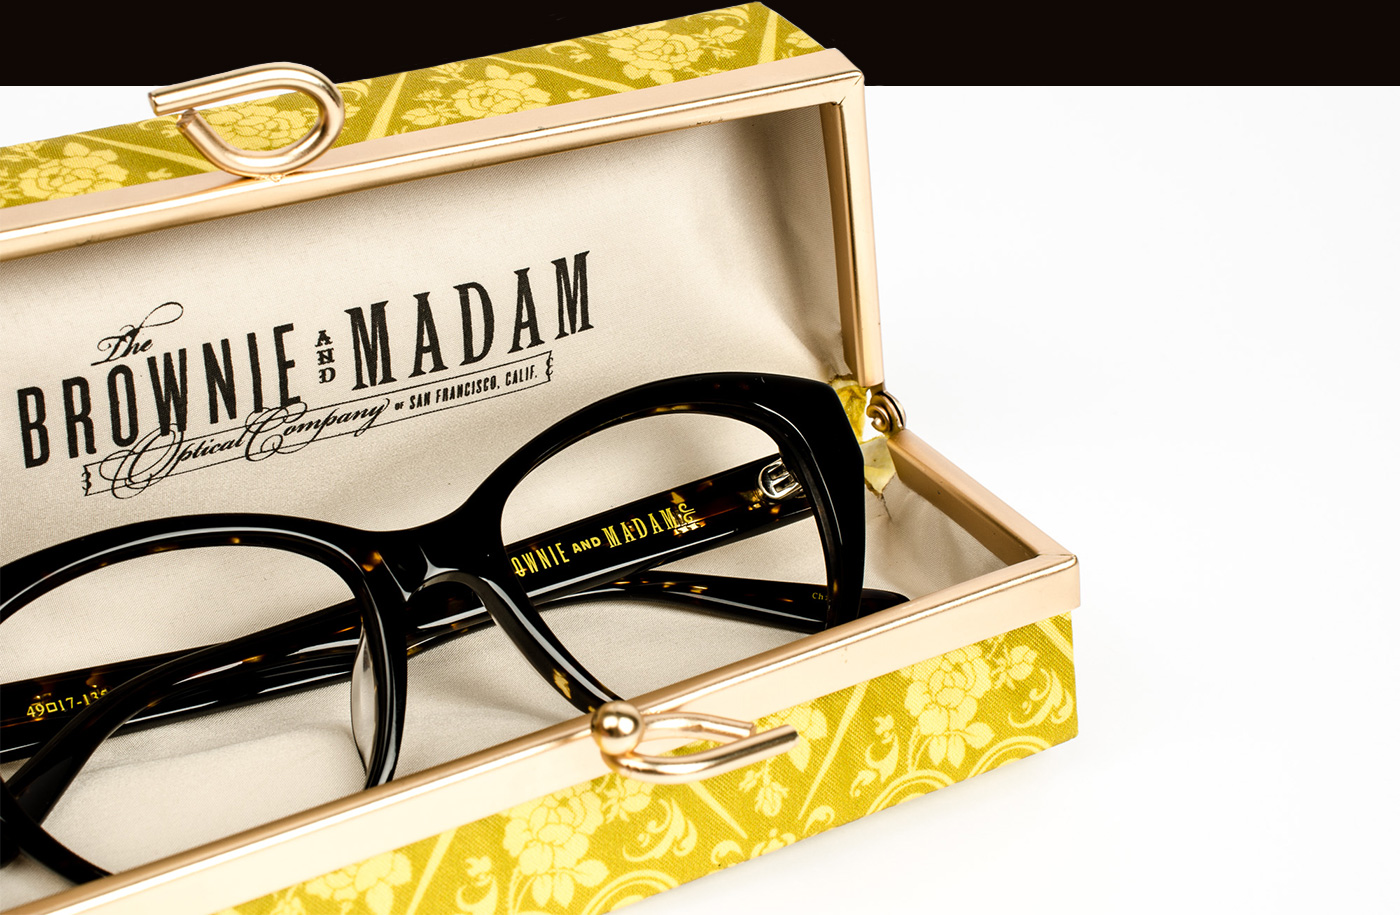 Brownie & Madam branded hard eyeglasses case